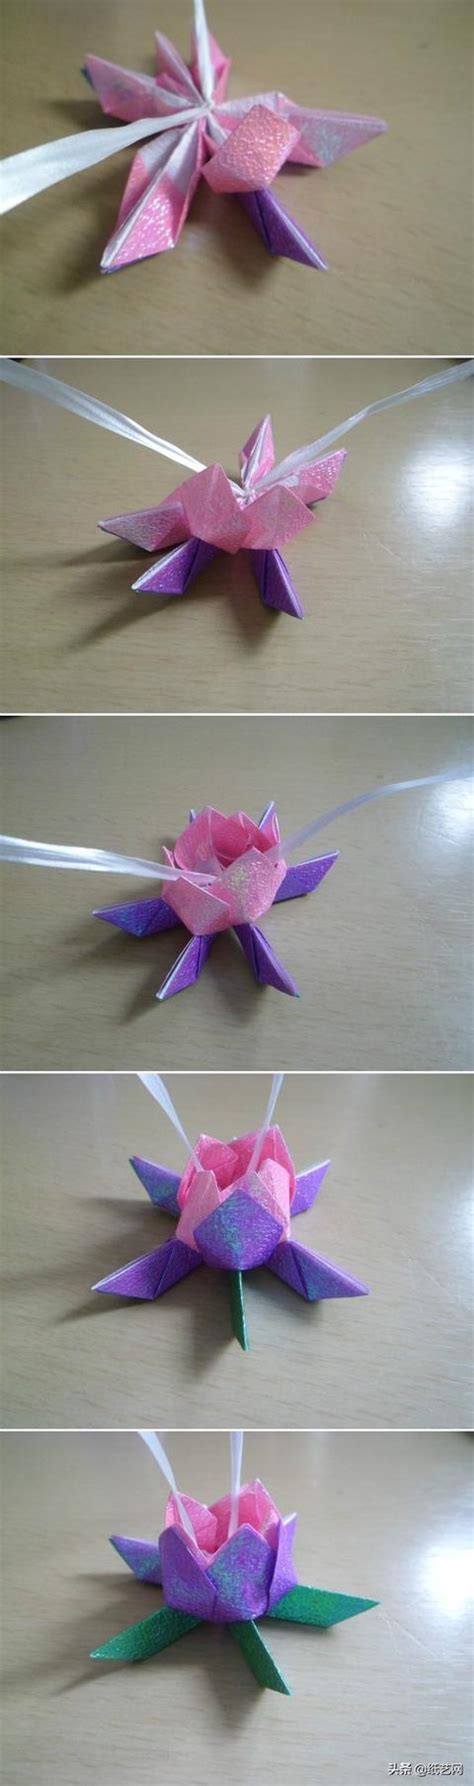 超簡單的摺紙鬱金香、玫瑰花、蓮花詳細教程來了 每日頭條